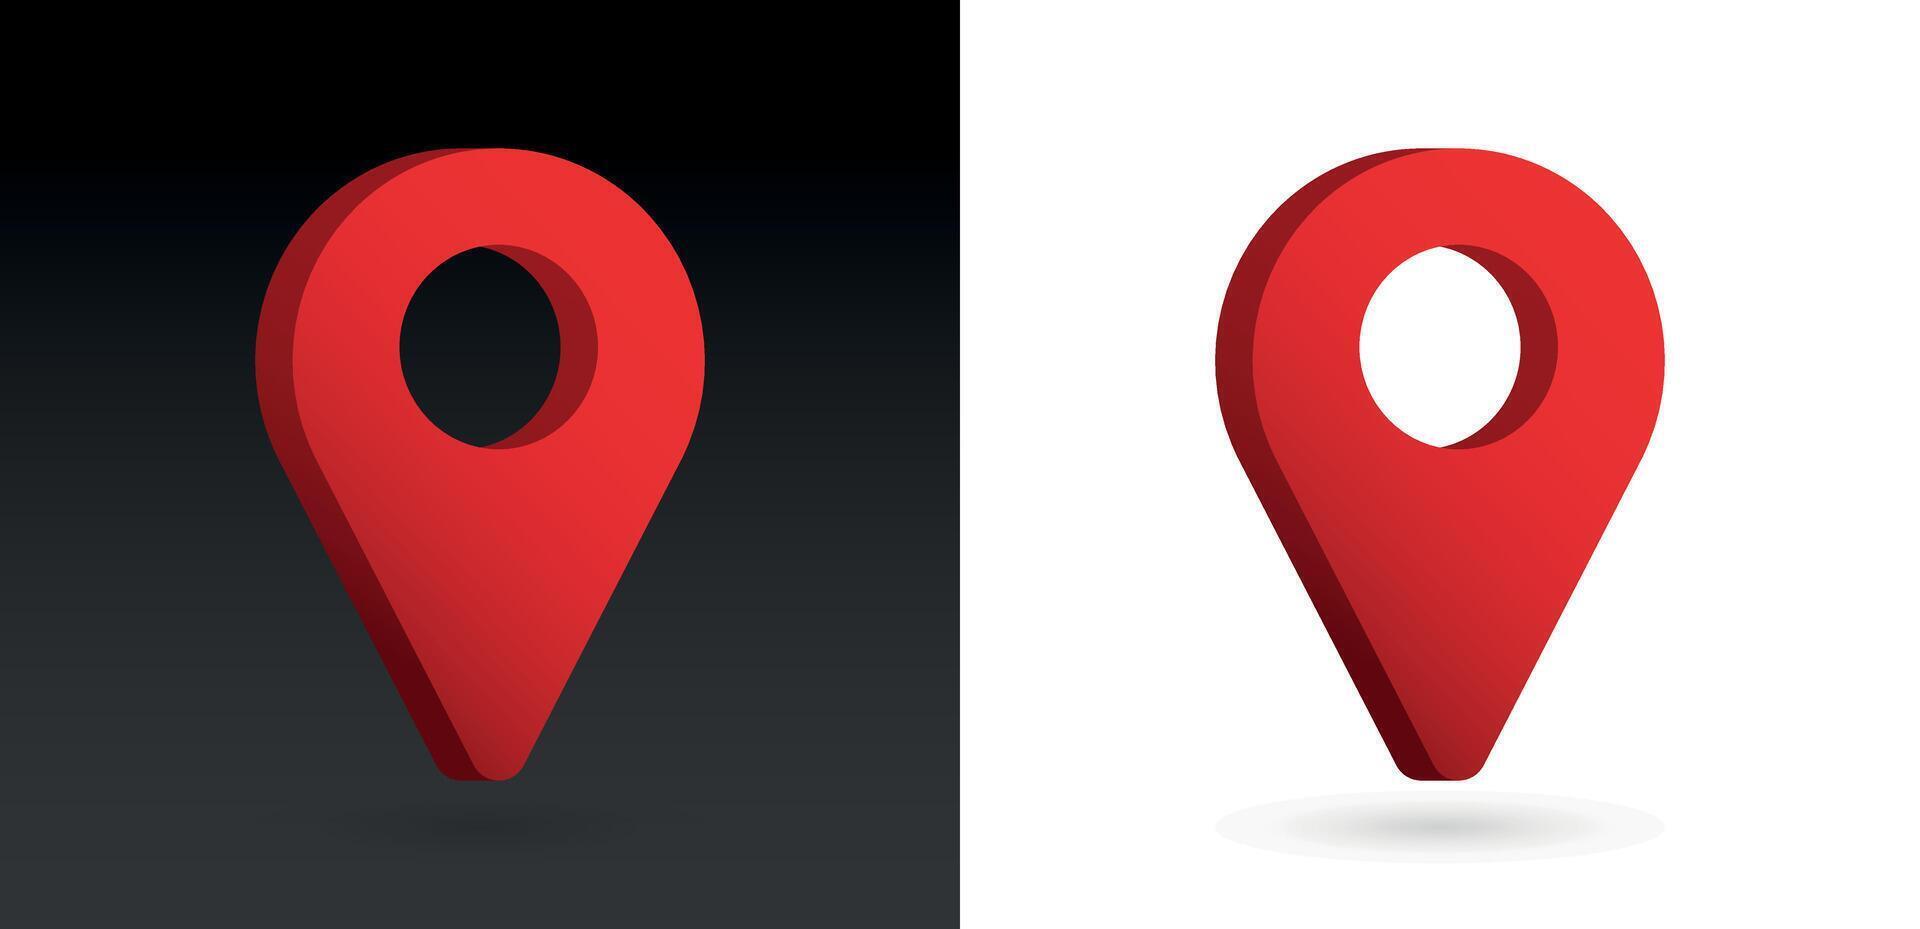 3d realistico rosso colore Posizione carta geografica perno GPS pointer marcatori vettore illustrazione per destinazione.